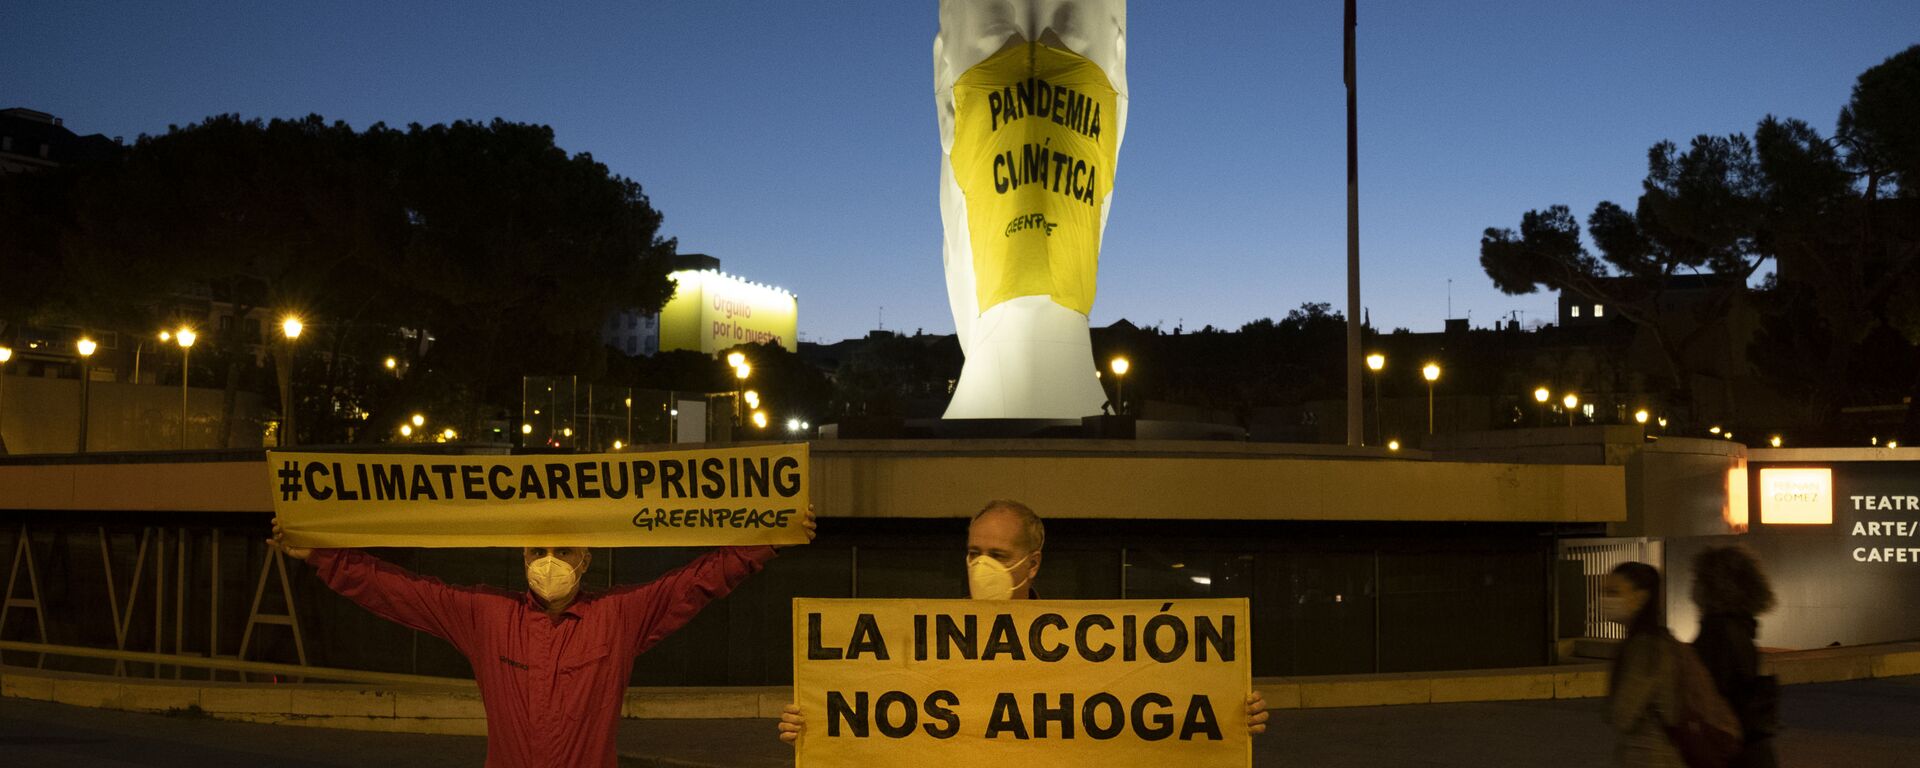 Activistas de Greenpeace colocan una mascarilla a una escultura gigante en la Plaza Colón  - Sputnik Mundo, 1920, 17.06.2021